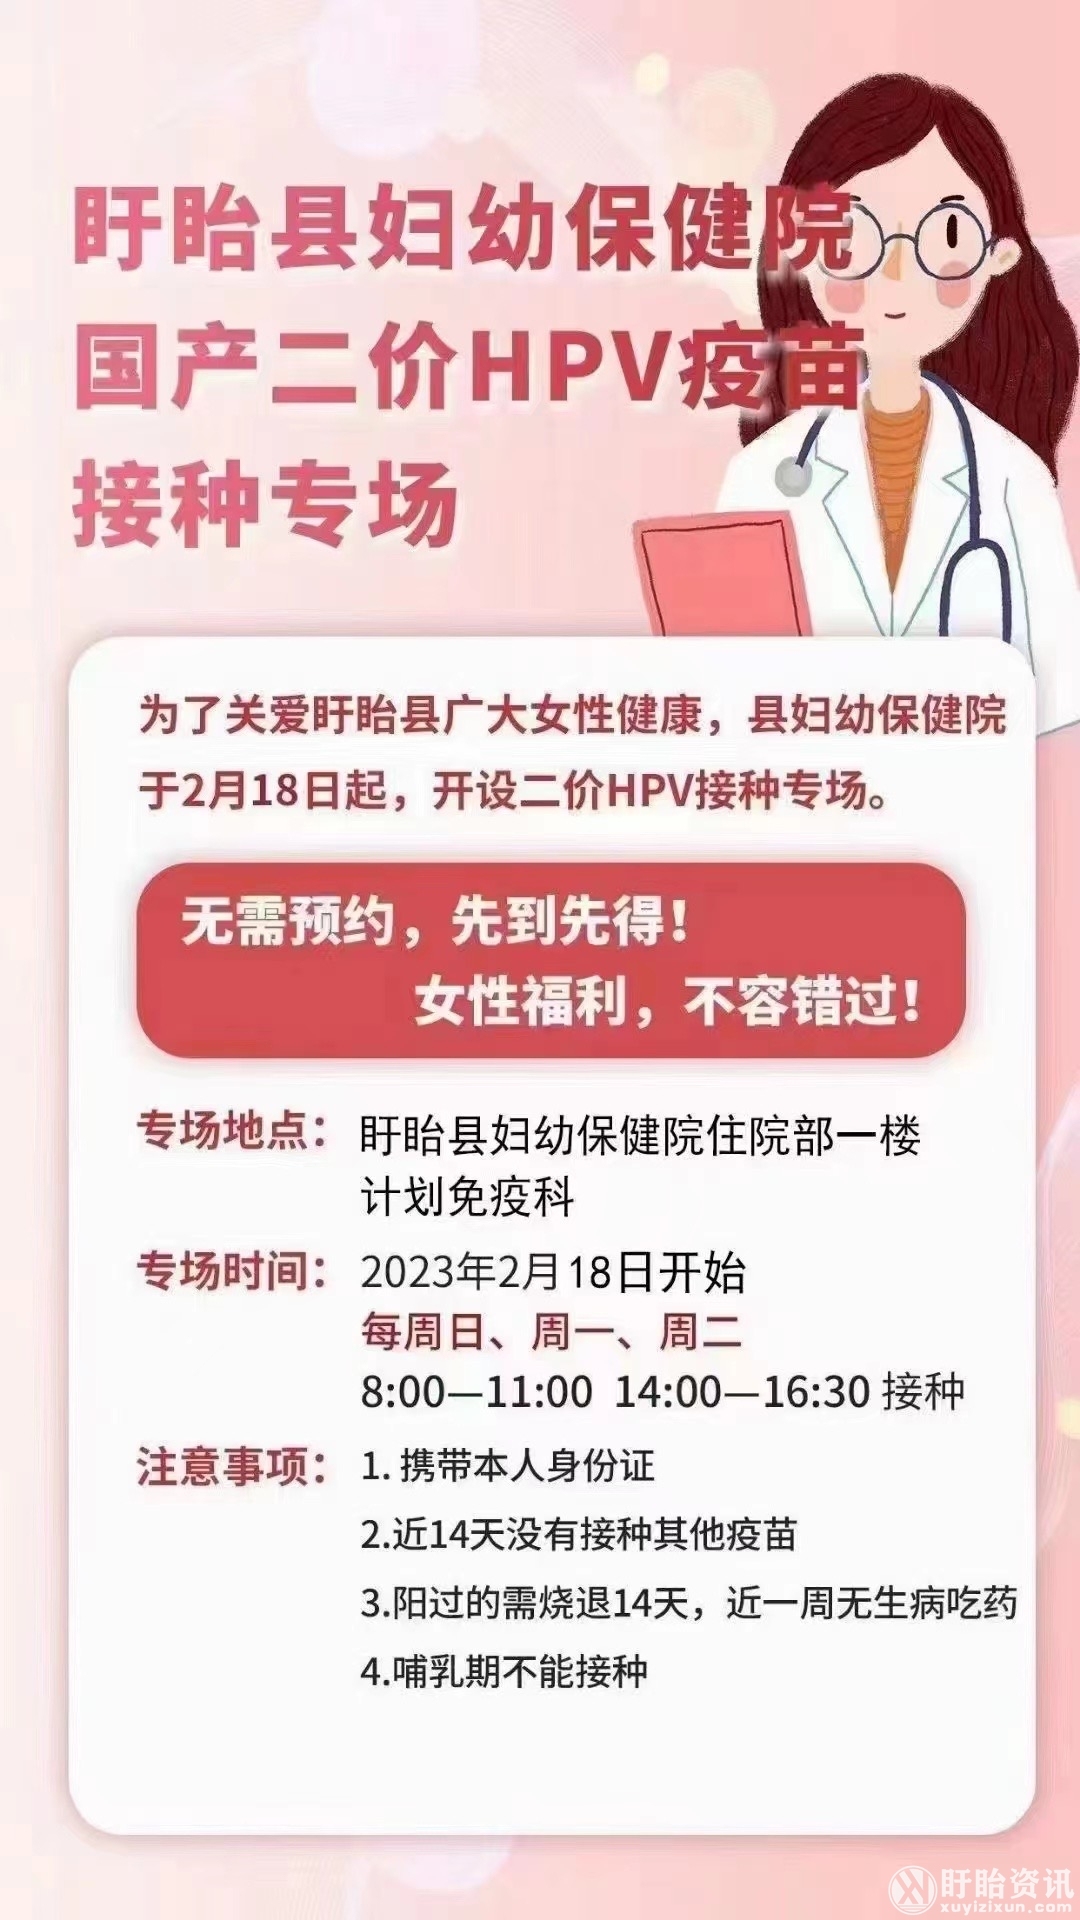   盱眙县妇幼保健院国产二价HPV疫苗接种专场  